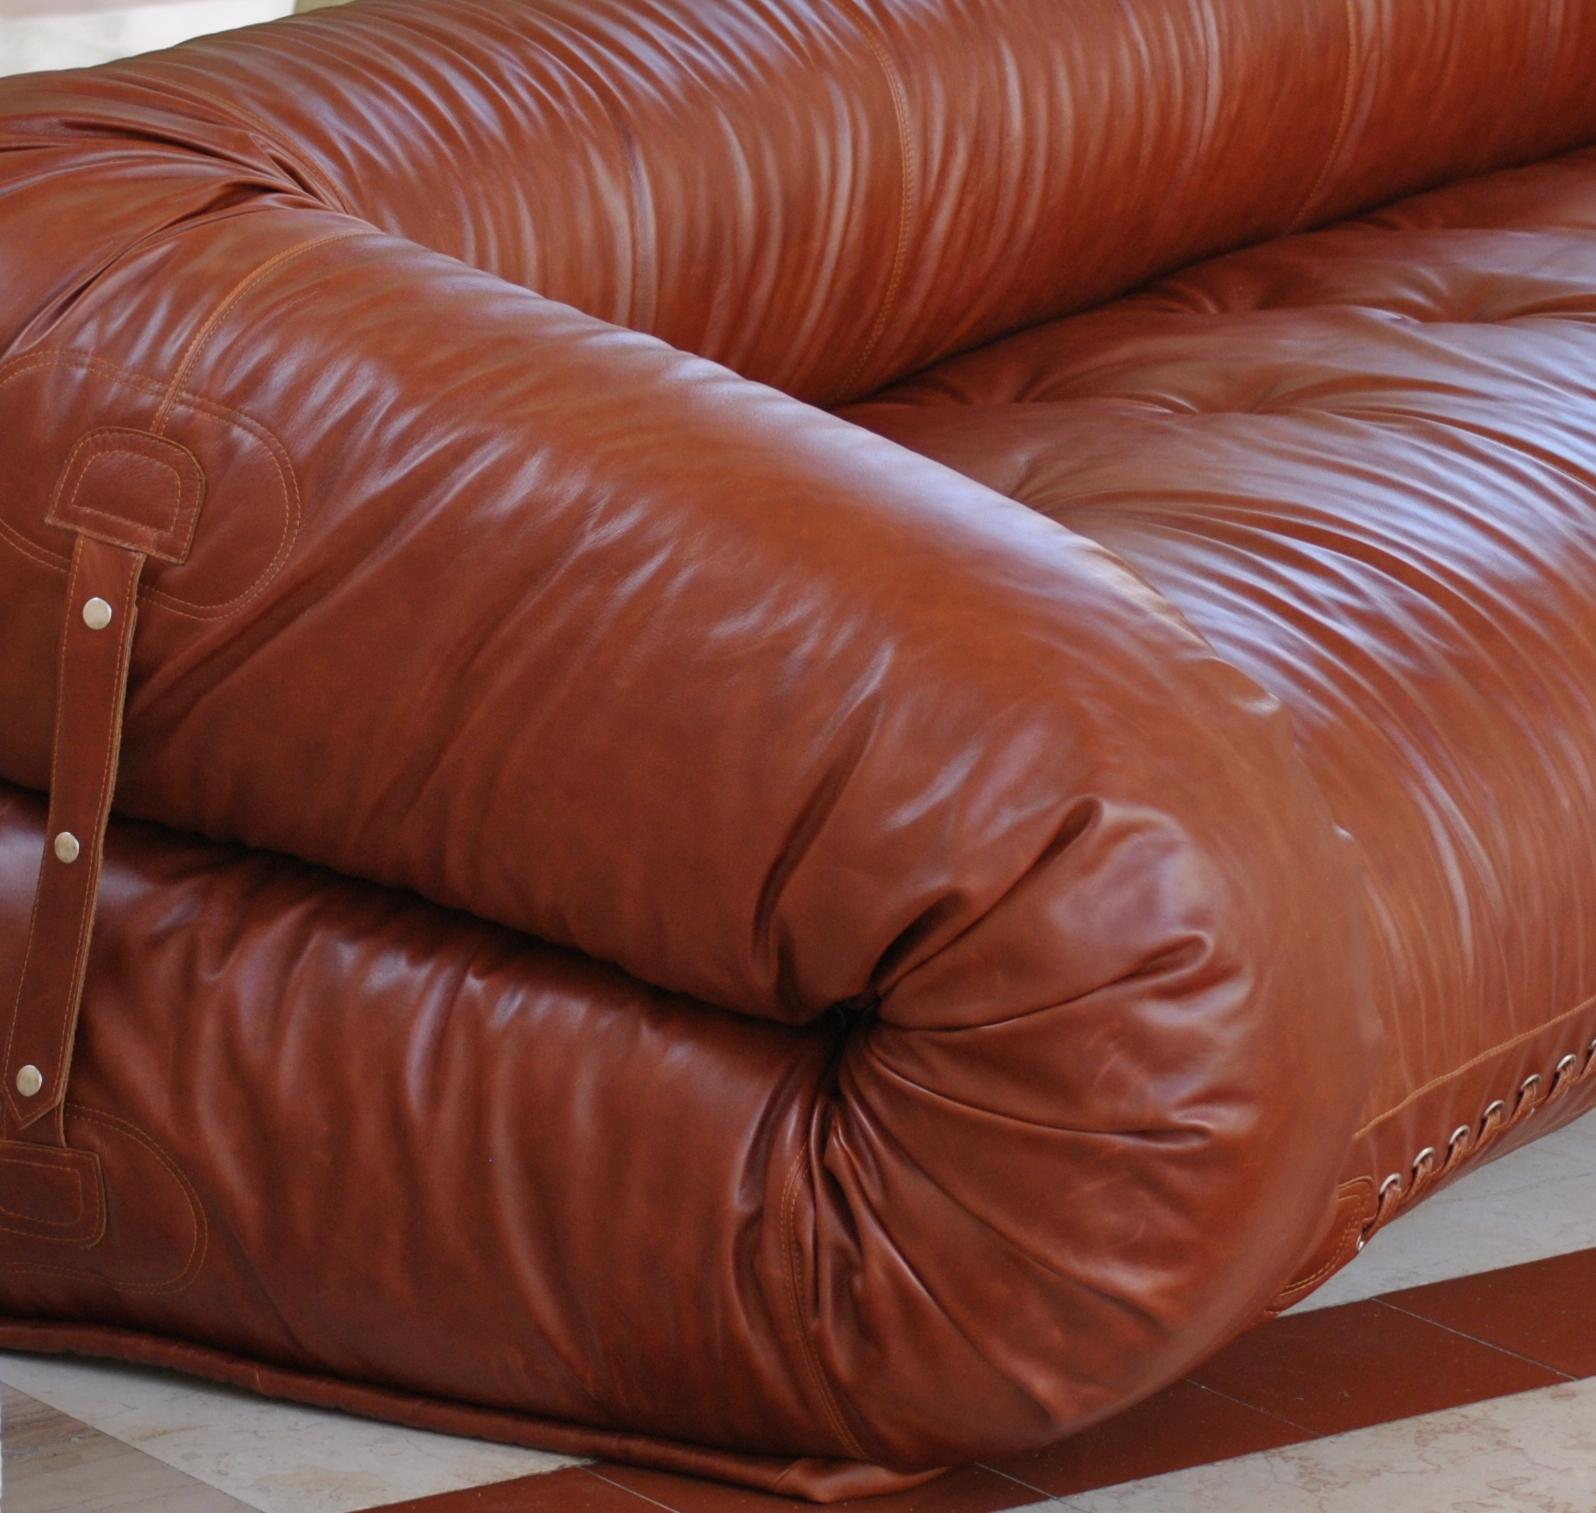 Le canapé-lit, conçu par Alessandro Becchi en collaboration avec l'équipe giovannetti, a récemment fêté ses 50 ans.
Son histoire est riche d'événements et de participations importants. Une pièce considérée comme un 